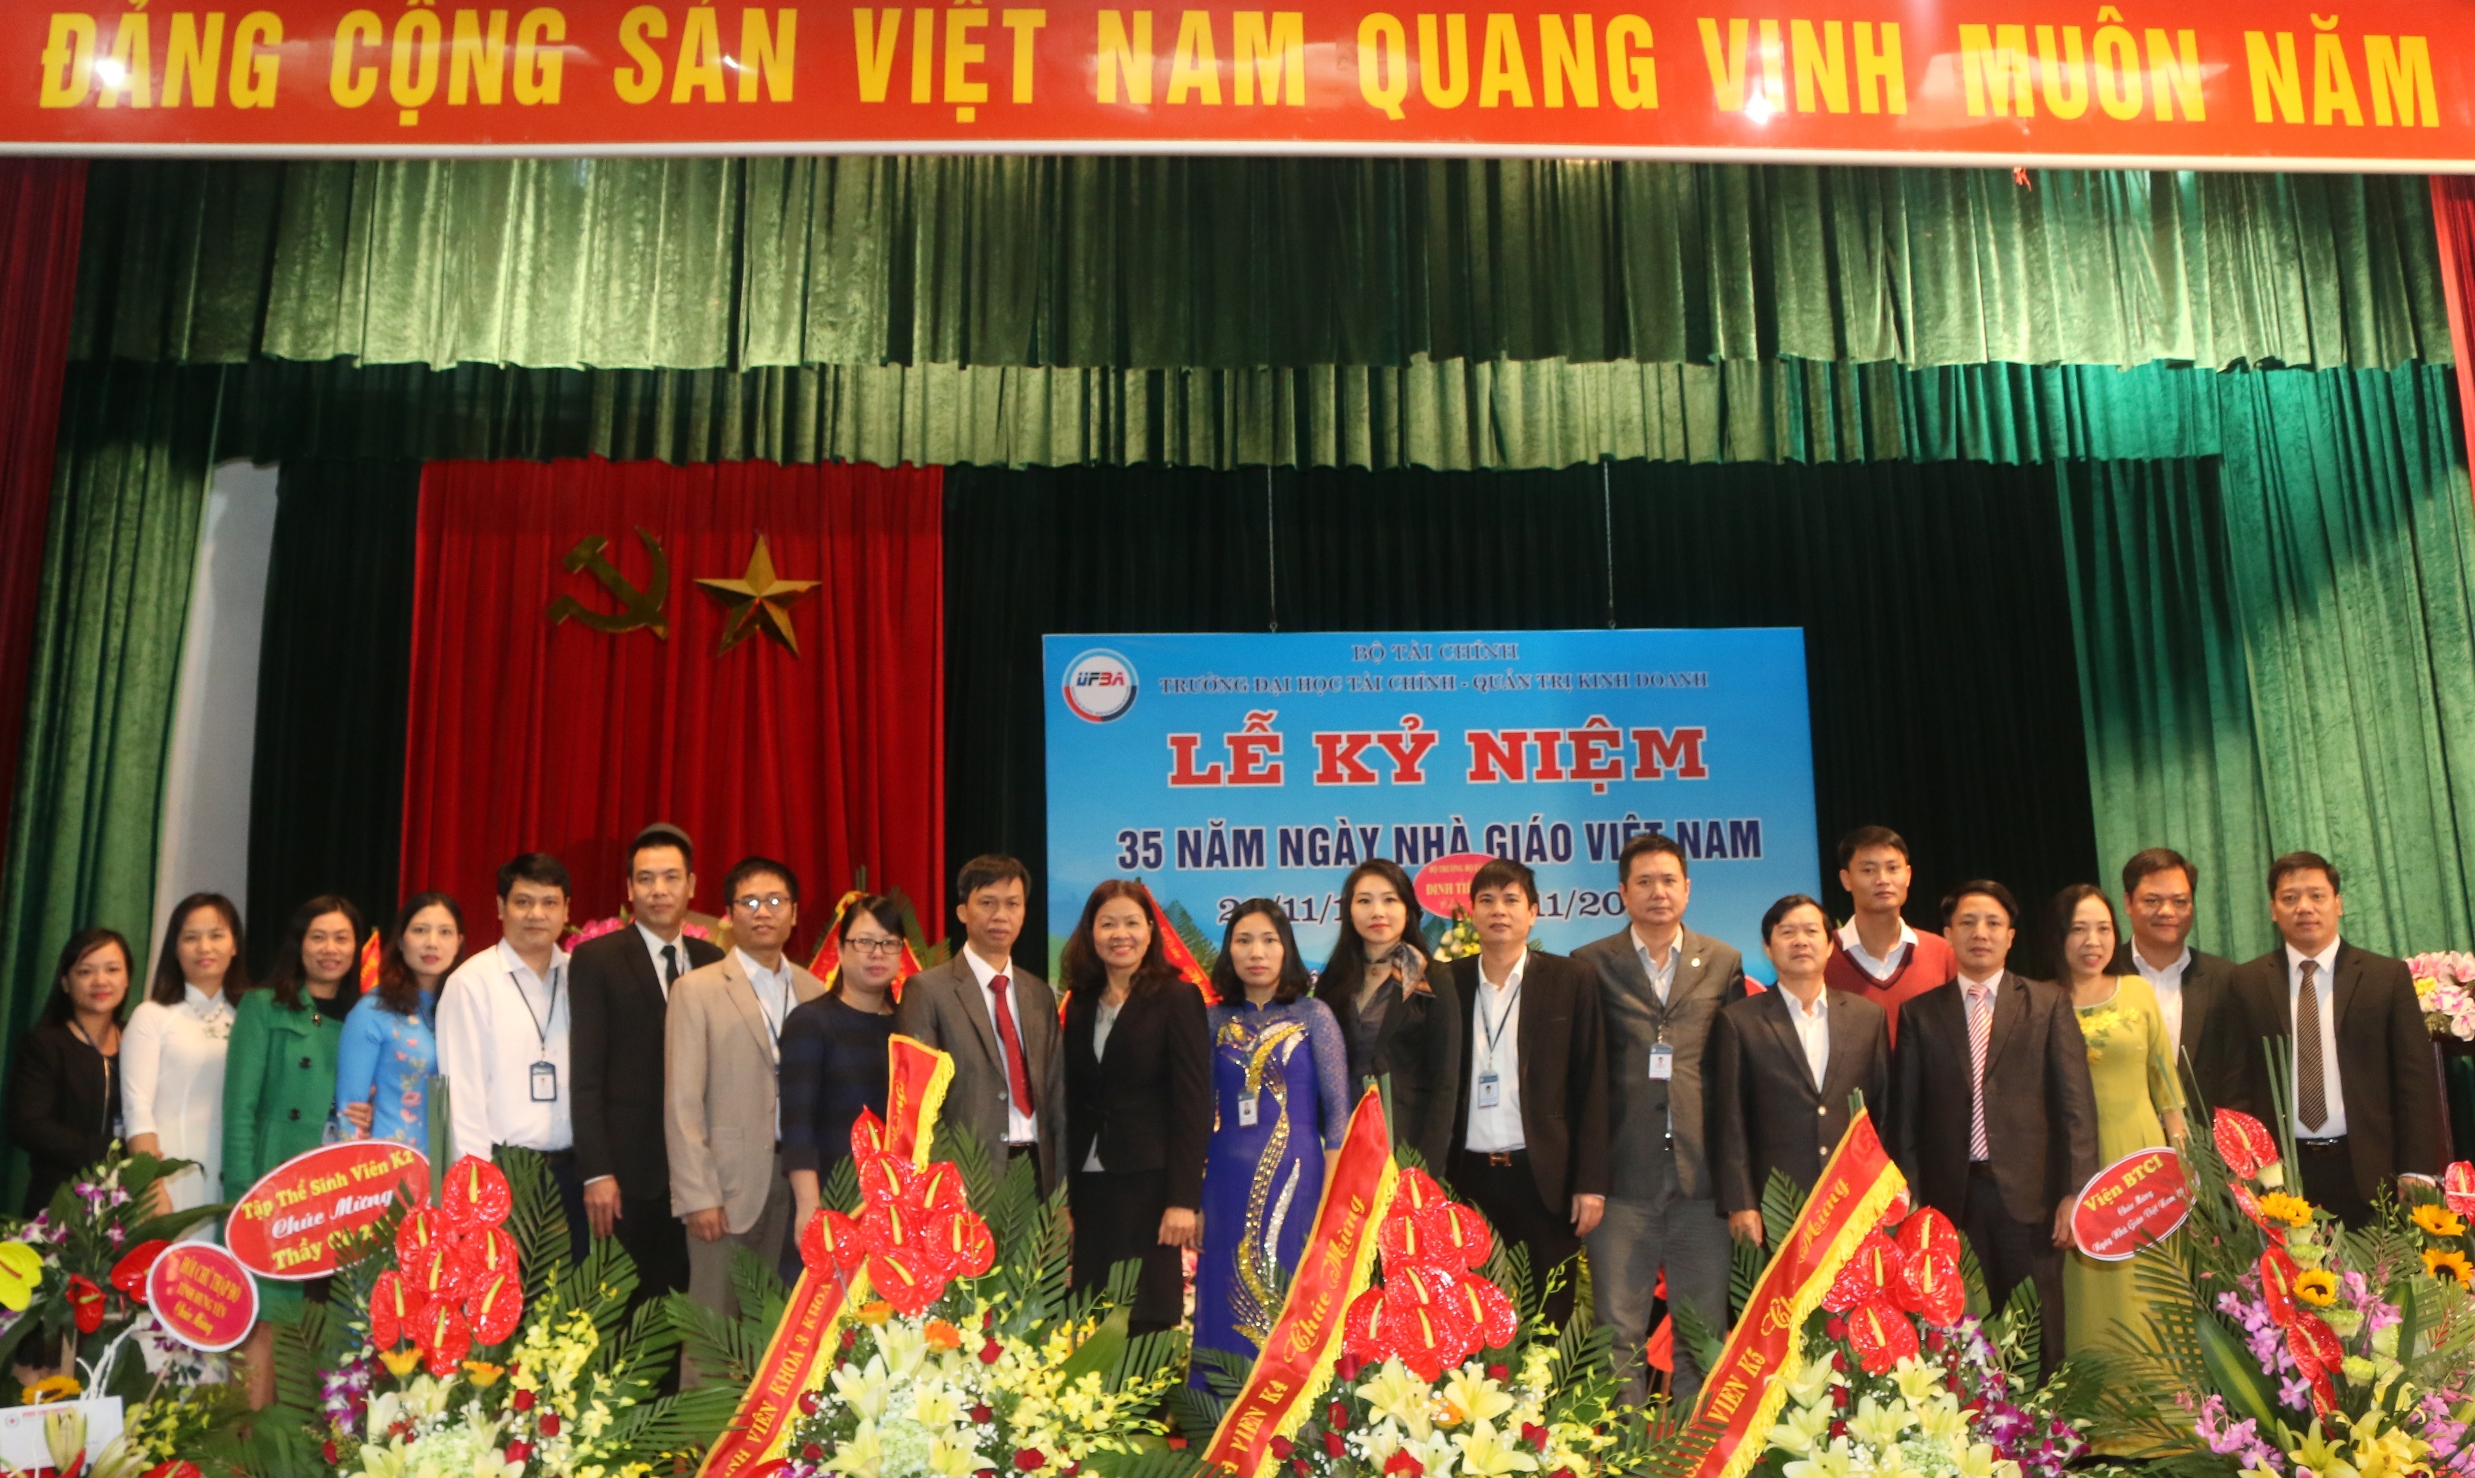 Lễ Mitting kỷ niệm 35 năm ngày Nhà giáo Việt Nam (20/11/1982 - 20/11/2017)